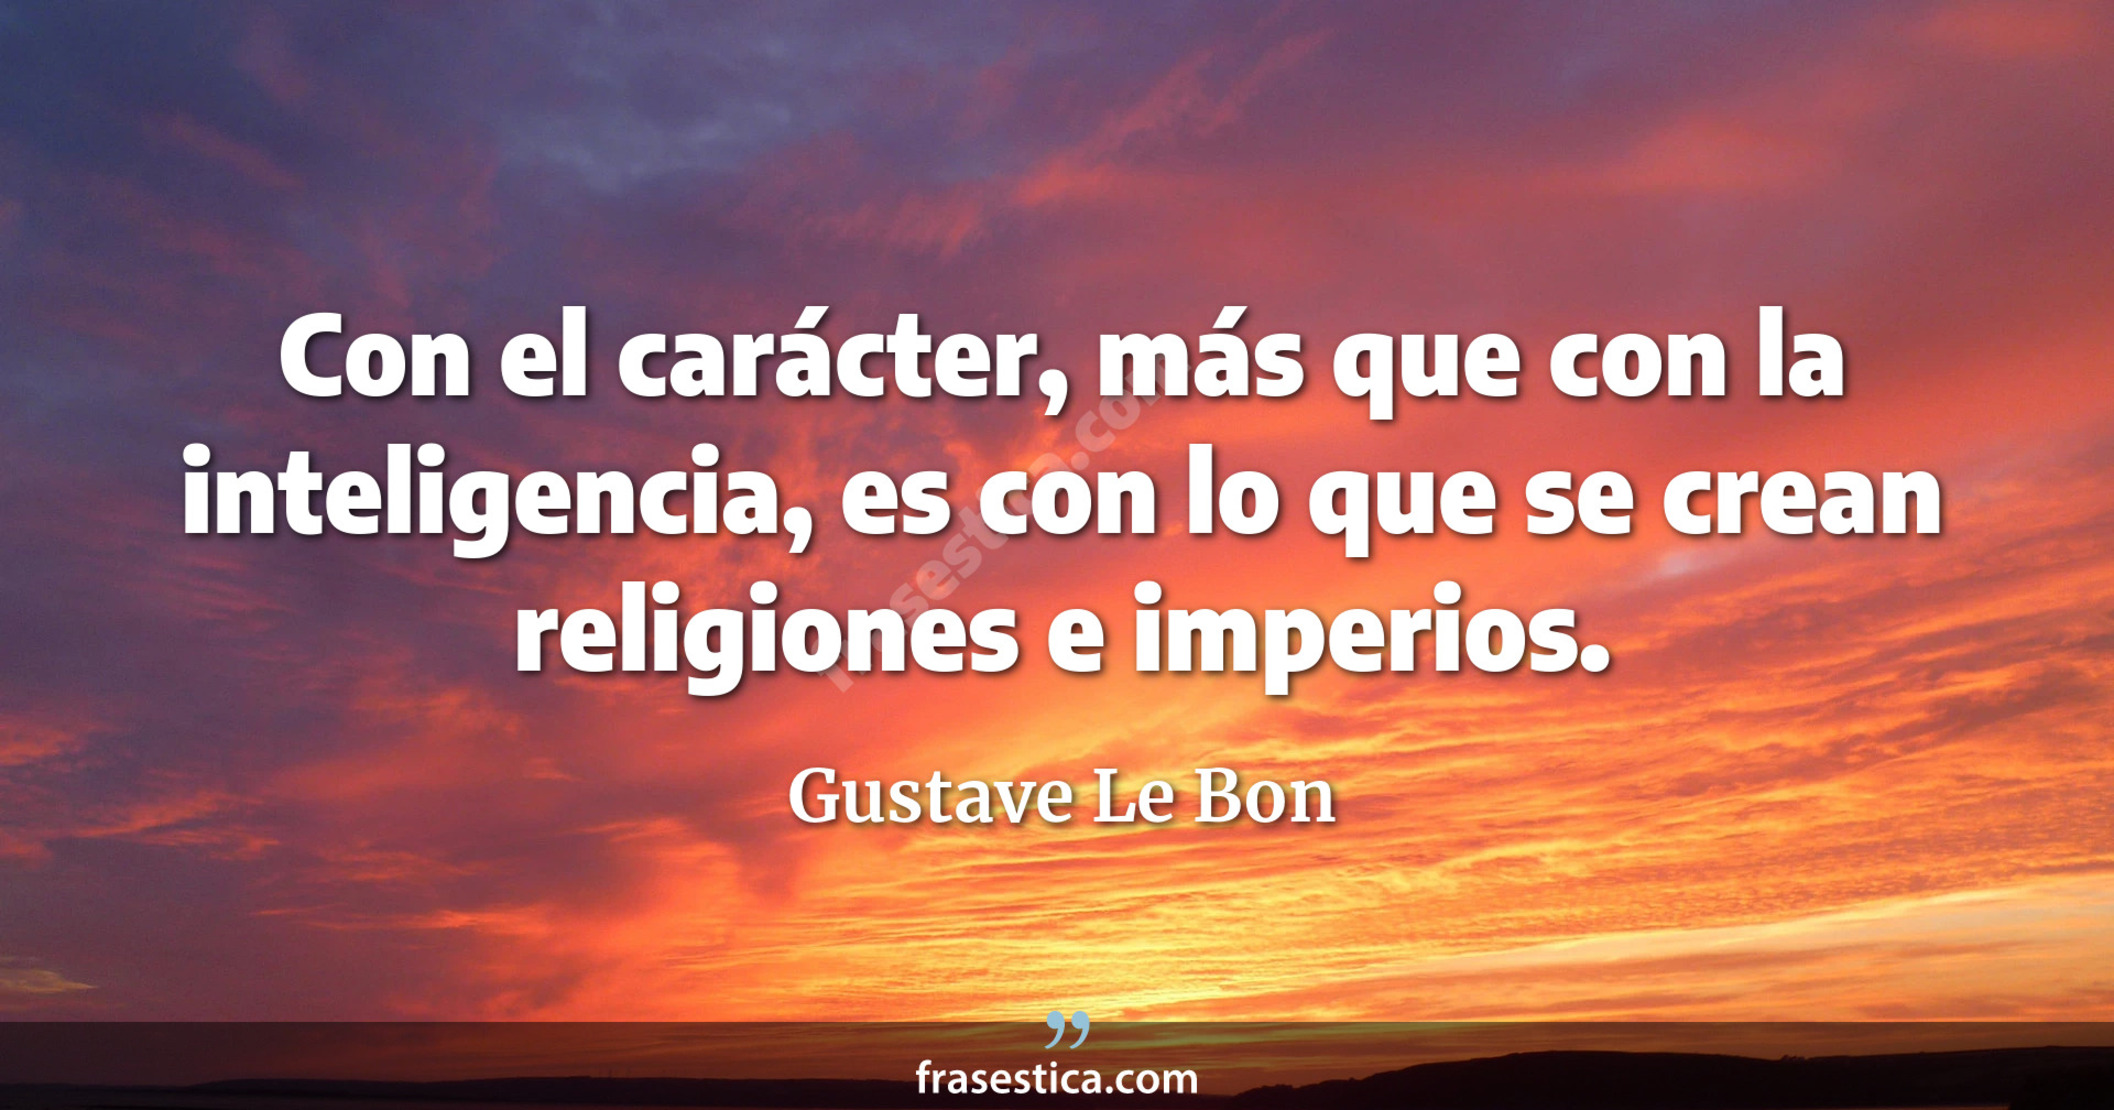 Con el carácter, más que con la inteligencia, es con lo que se crean religiones e imperios. - Gustave Le Bon